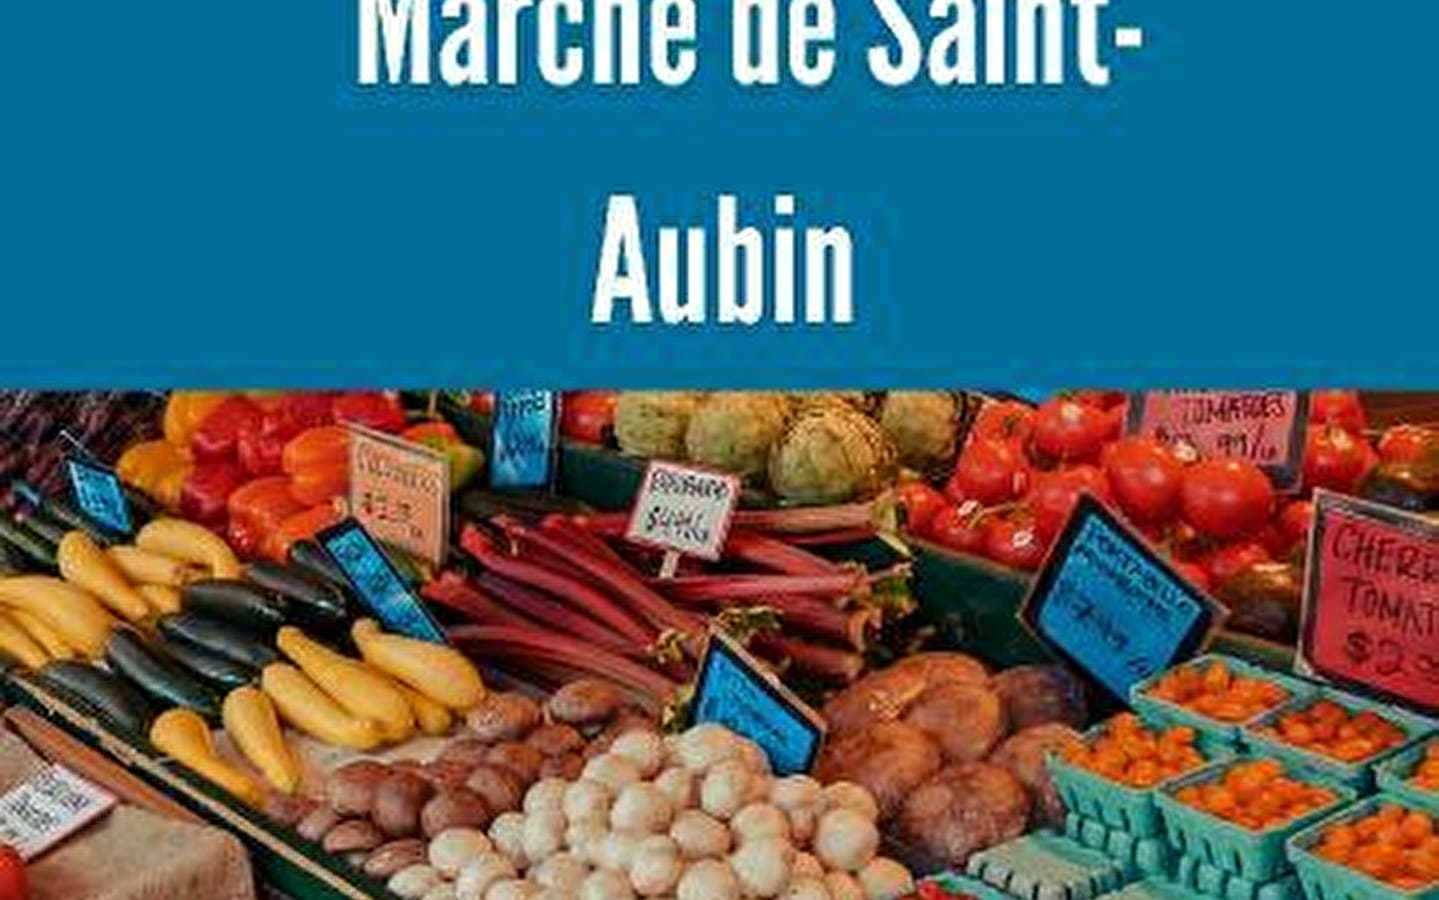 Marché de Saint-Aubin